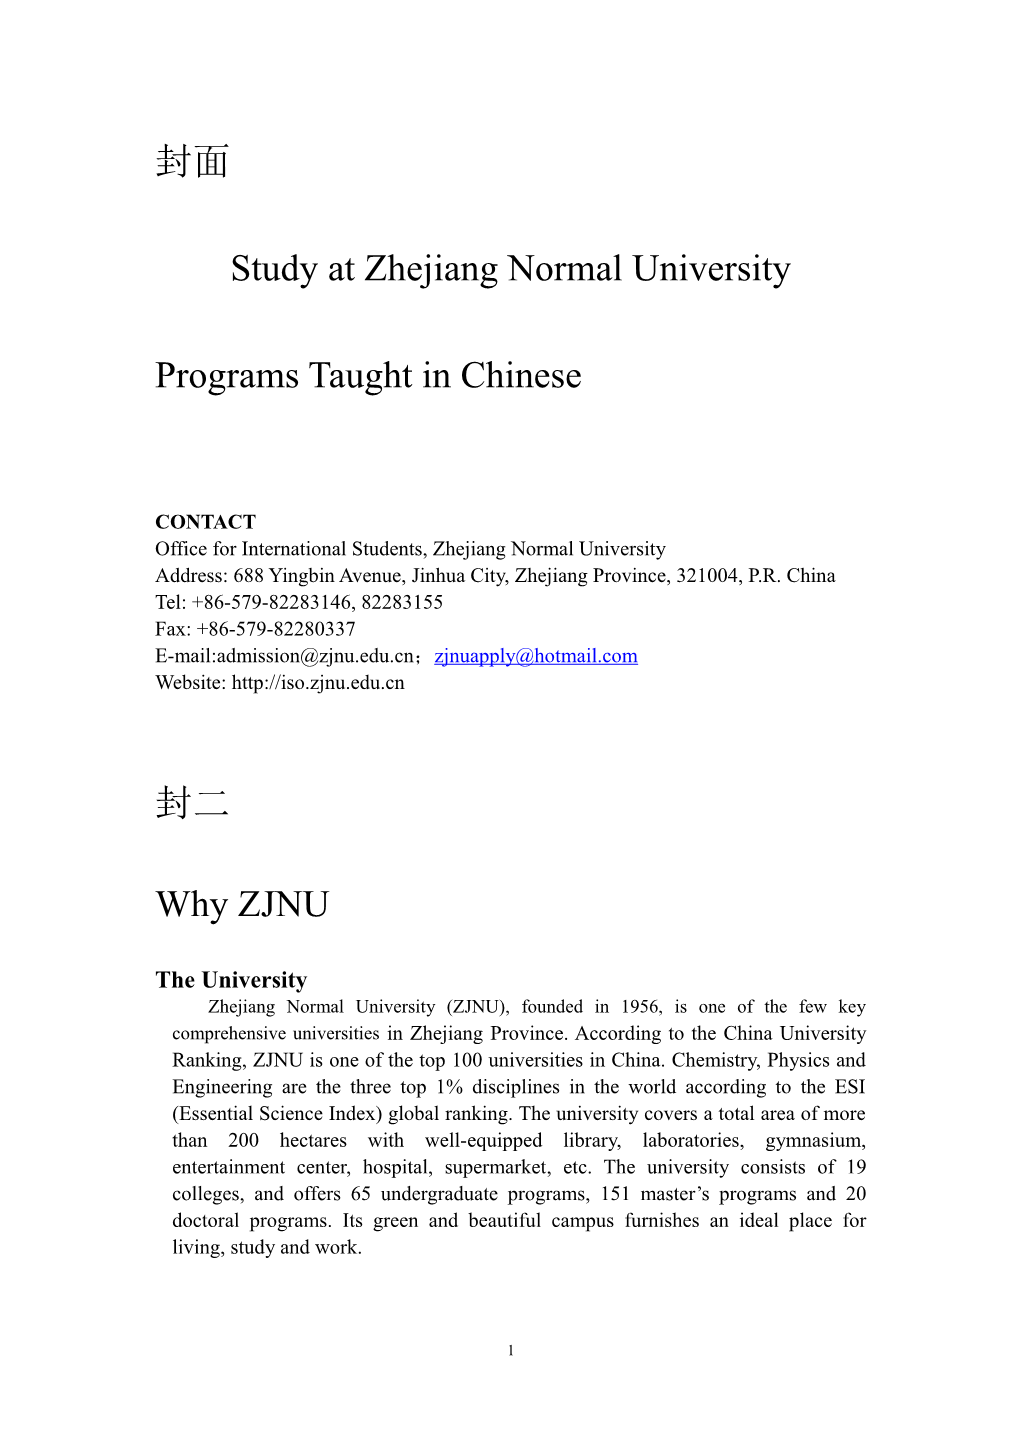 Study at Zhejiang Normal University